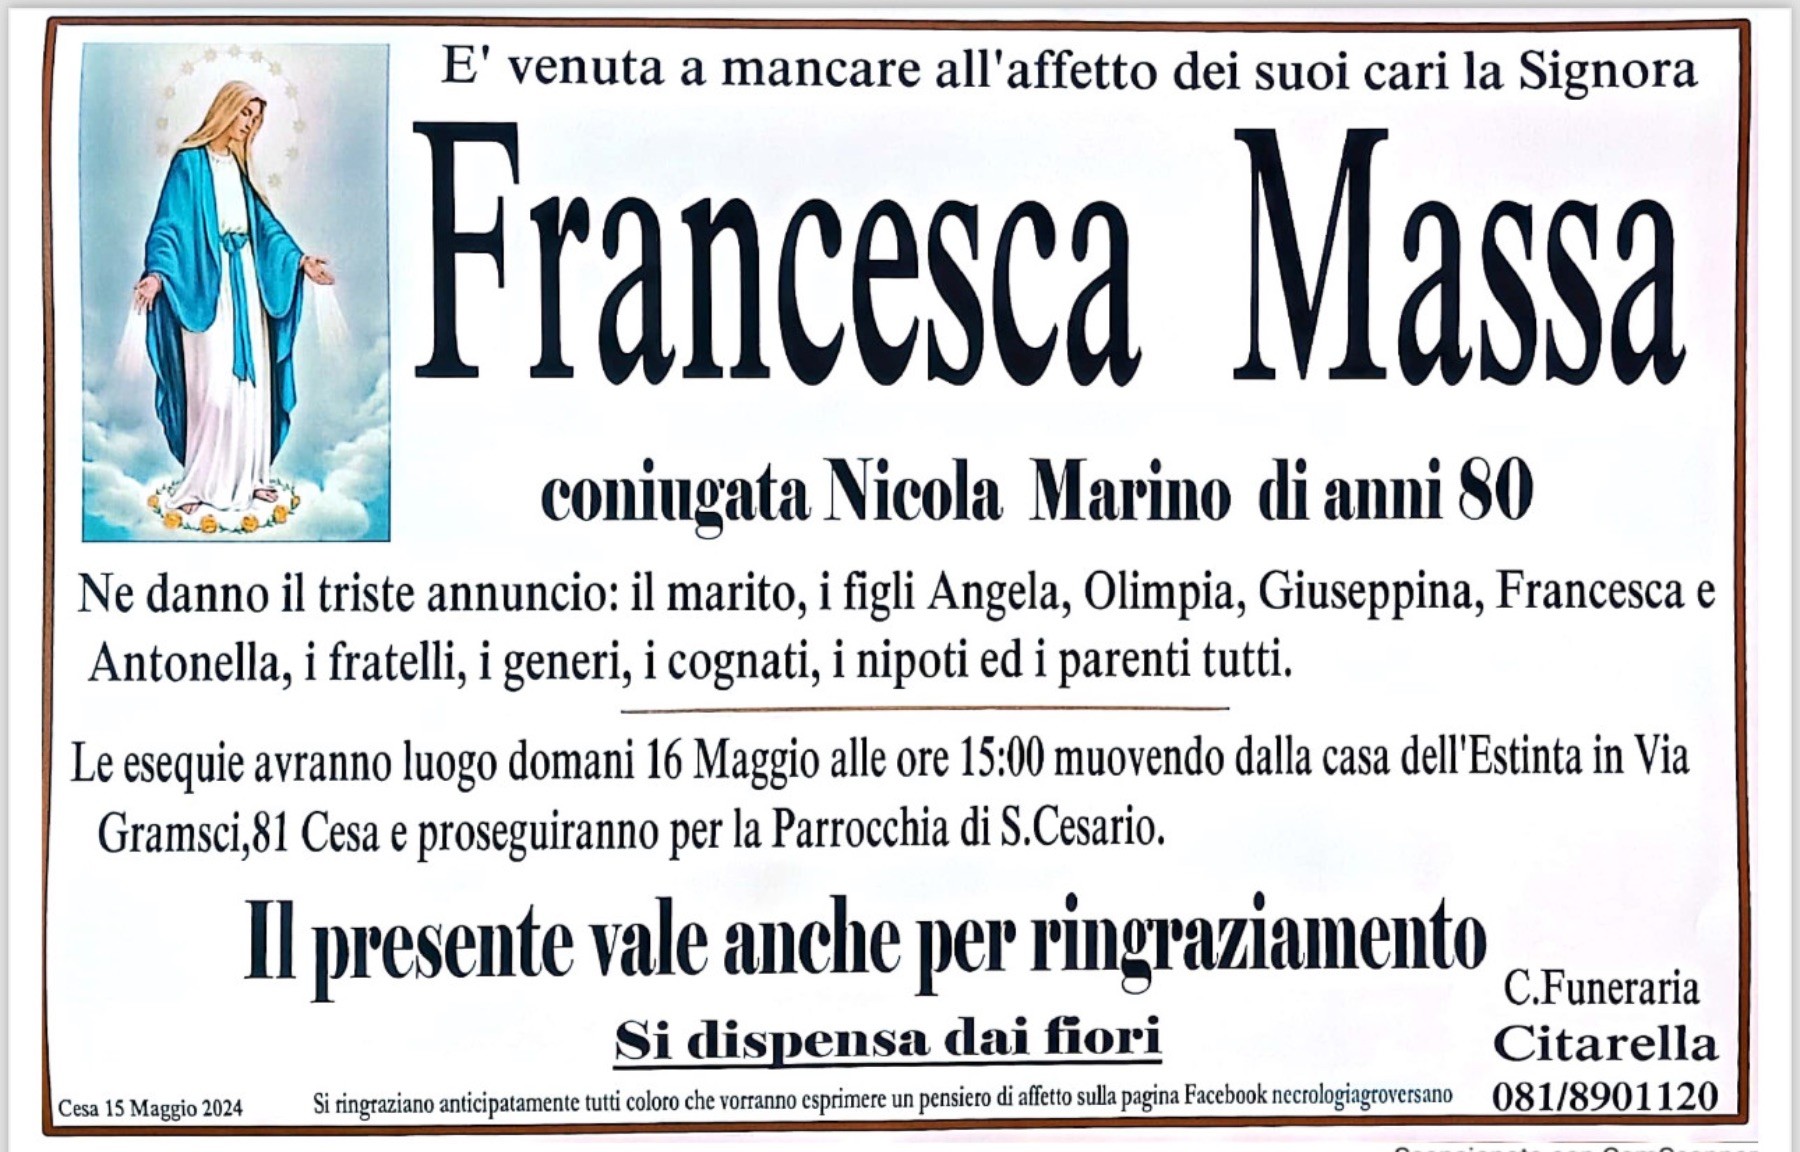 Francesca Massa